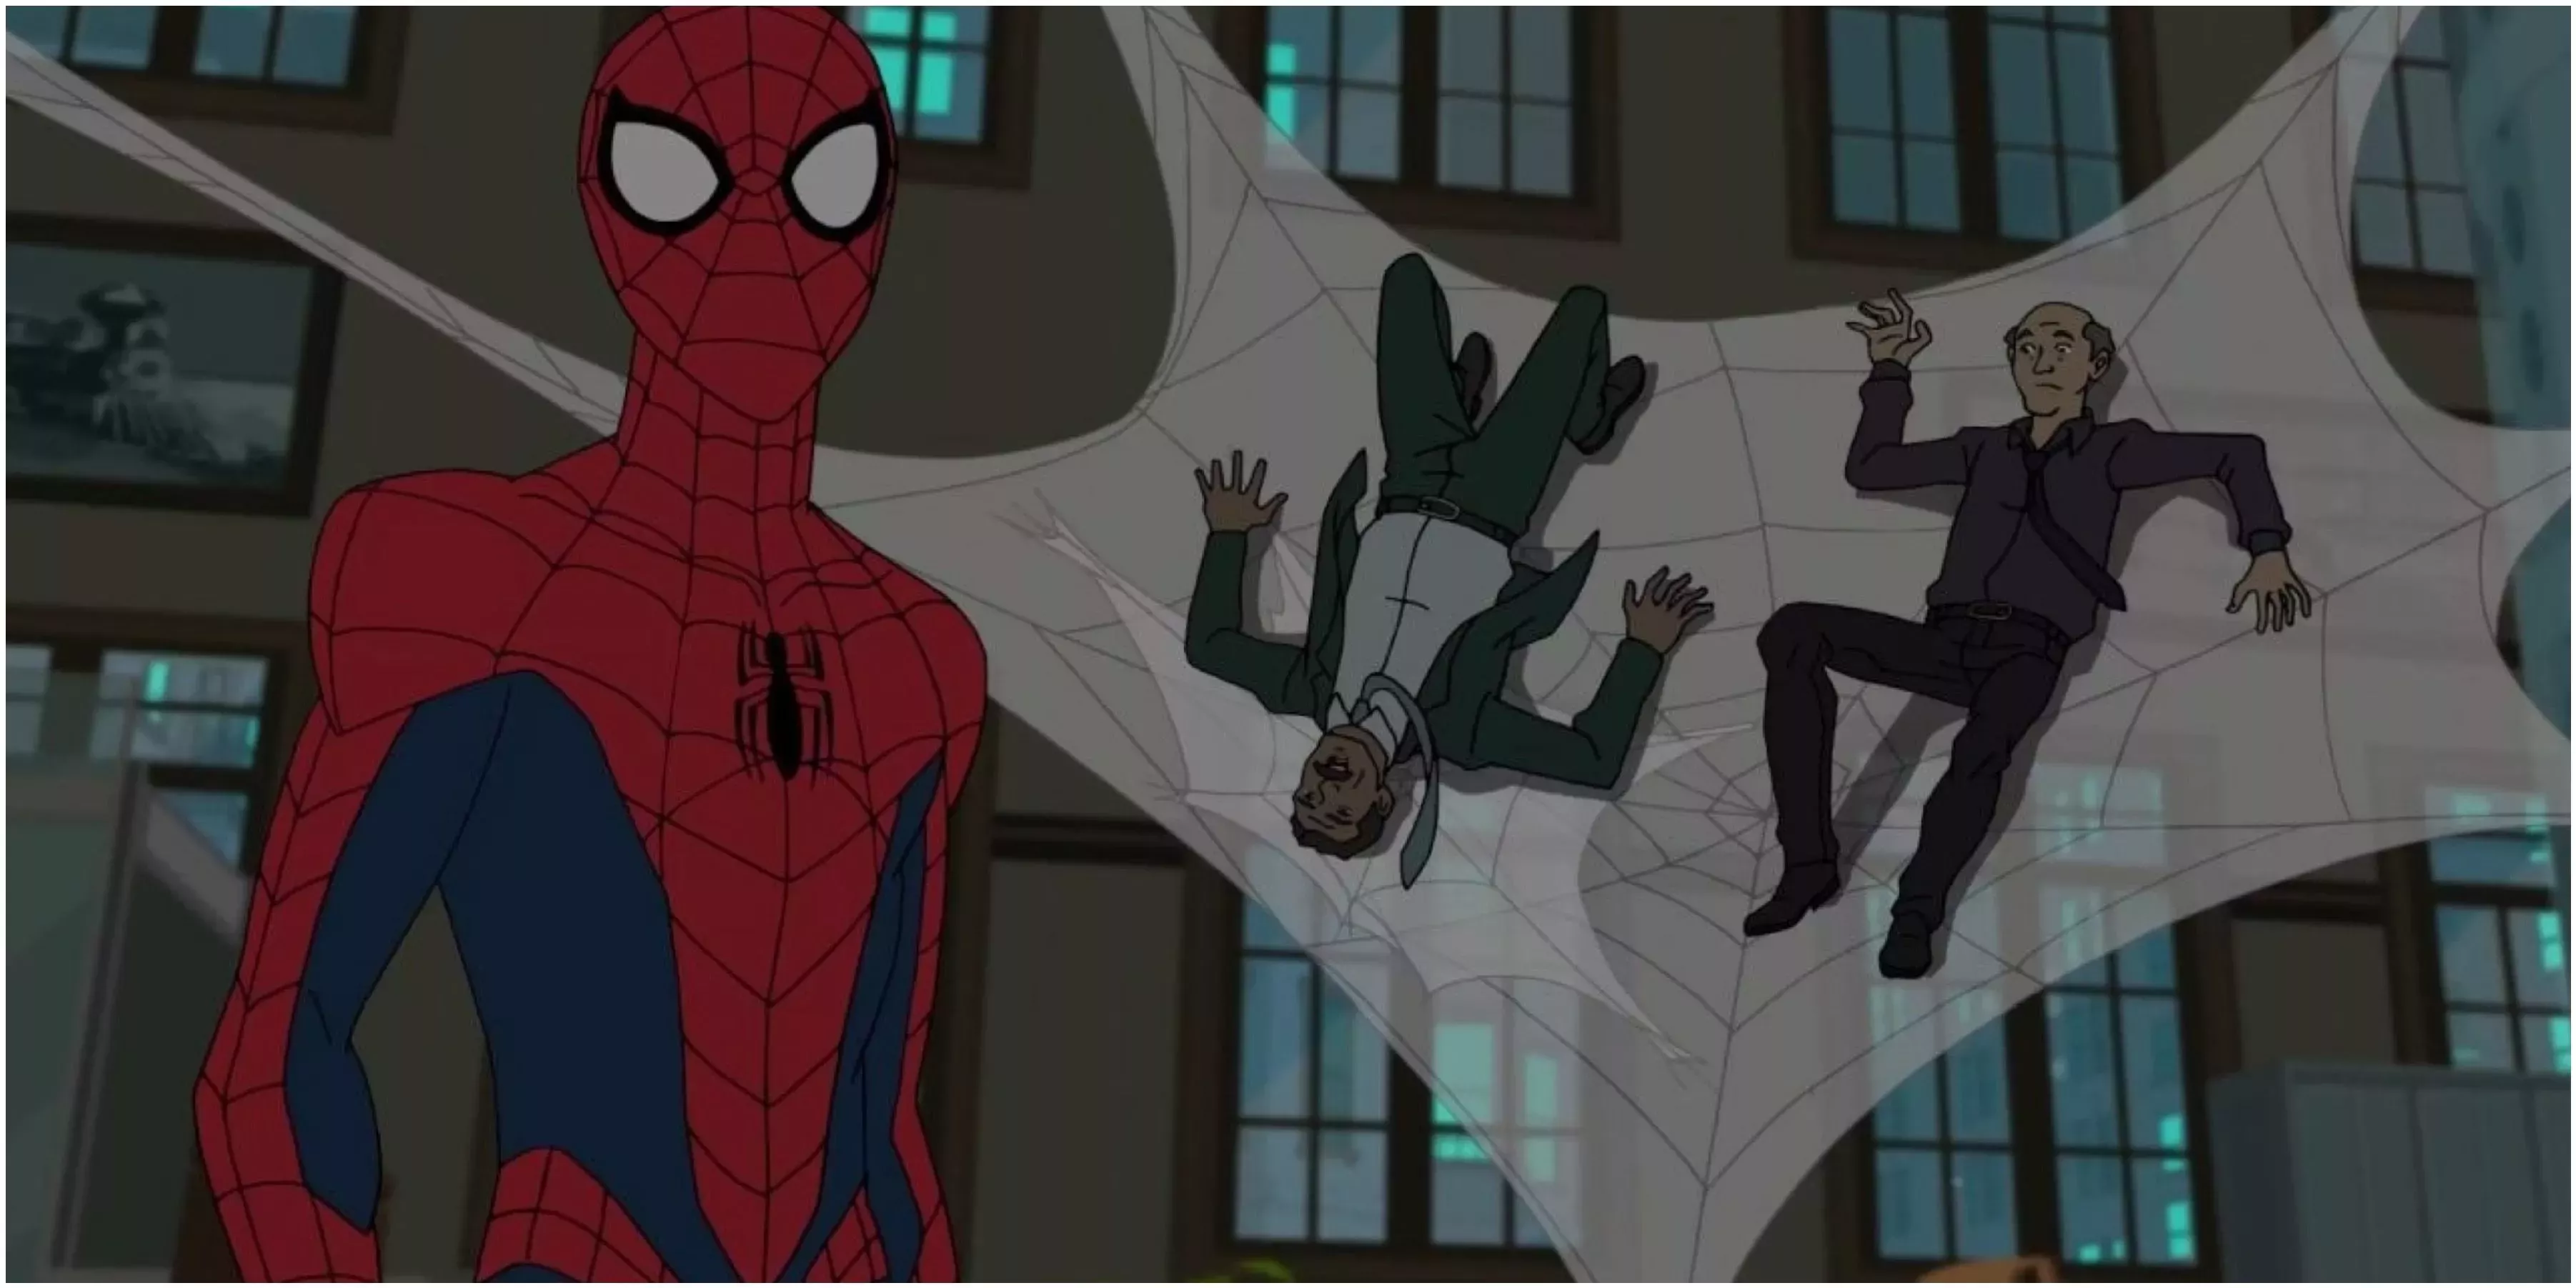 Las 10 mejores series de animación de Spiderman, clasificadas según IMDb |  Cultture